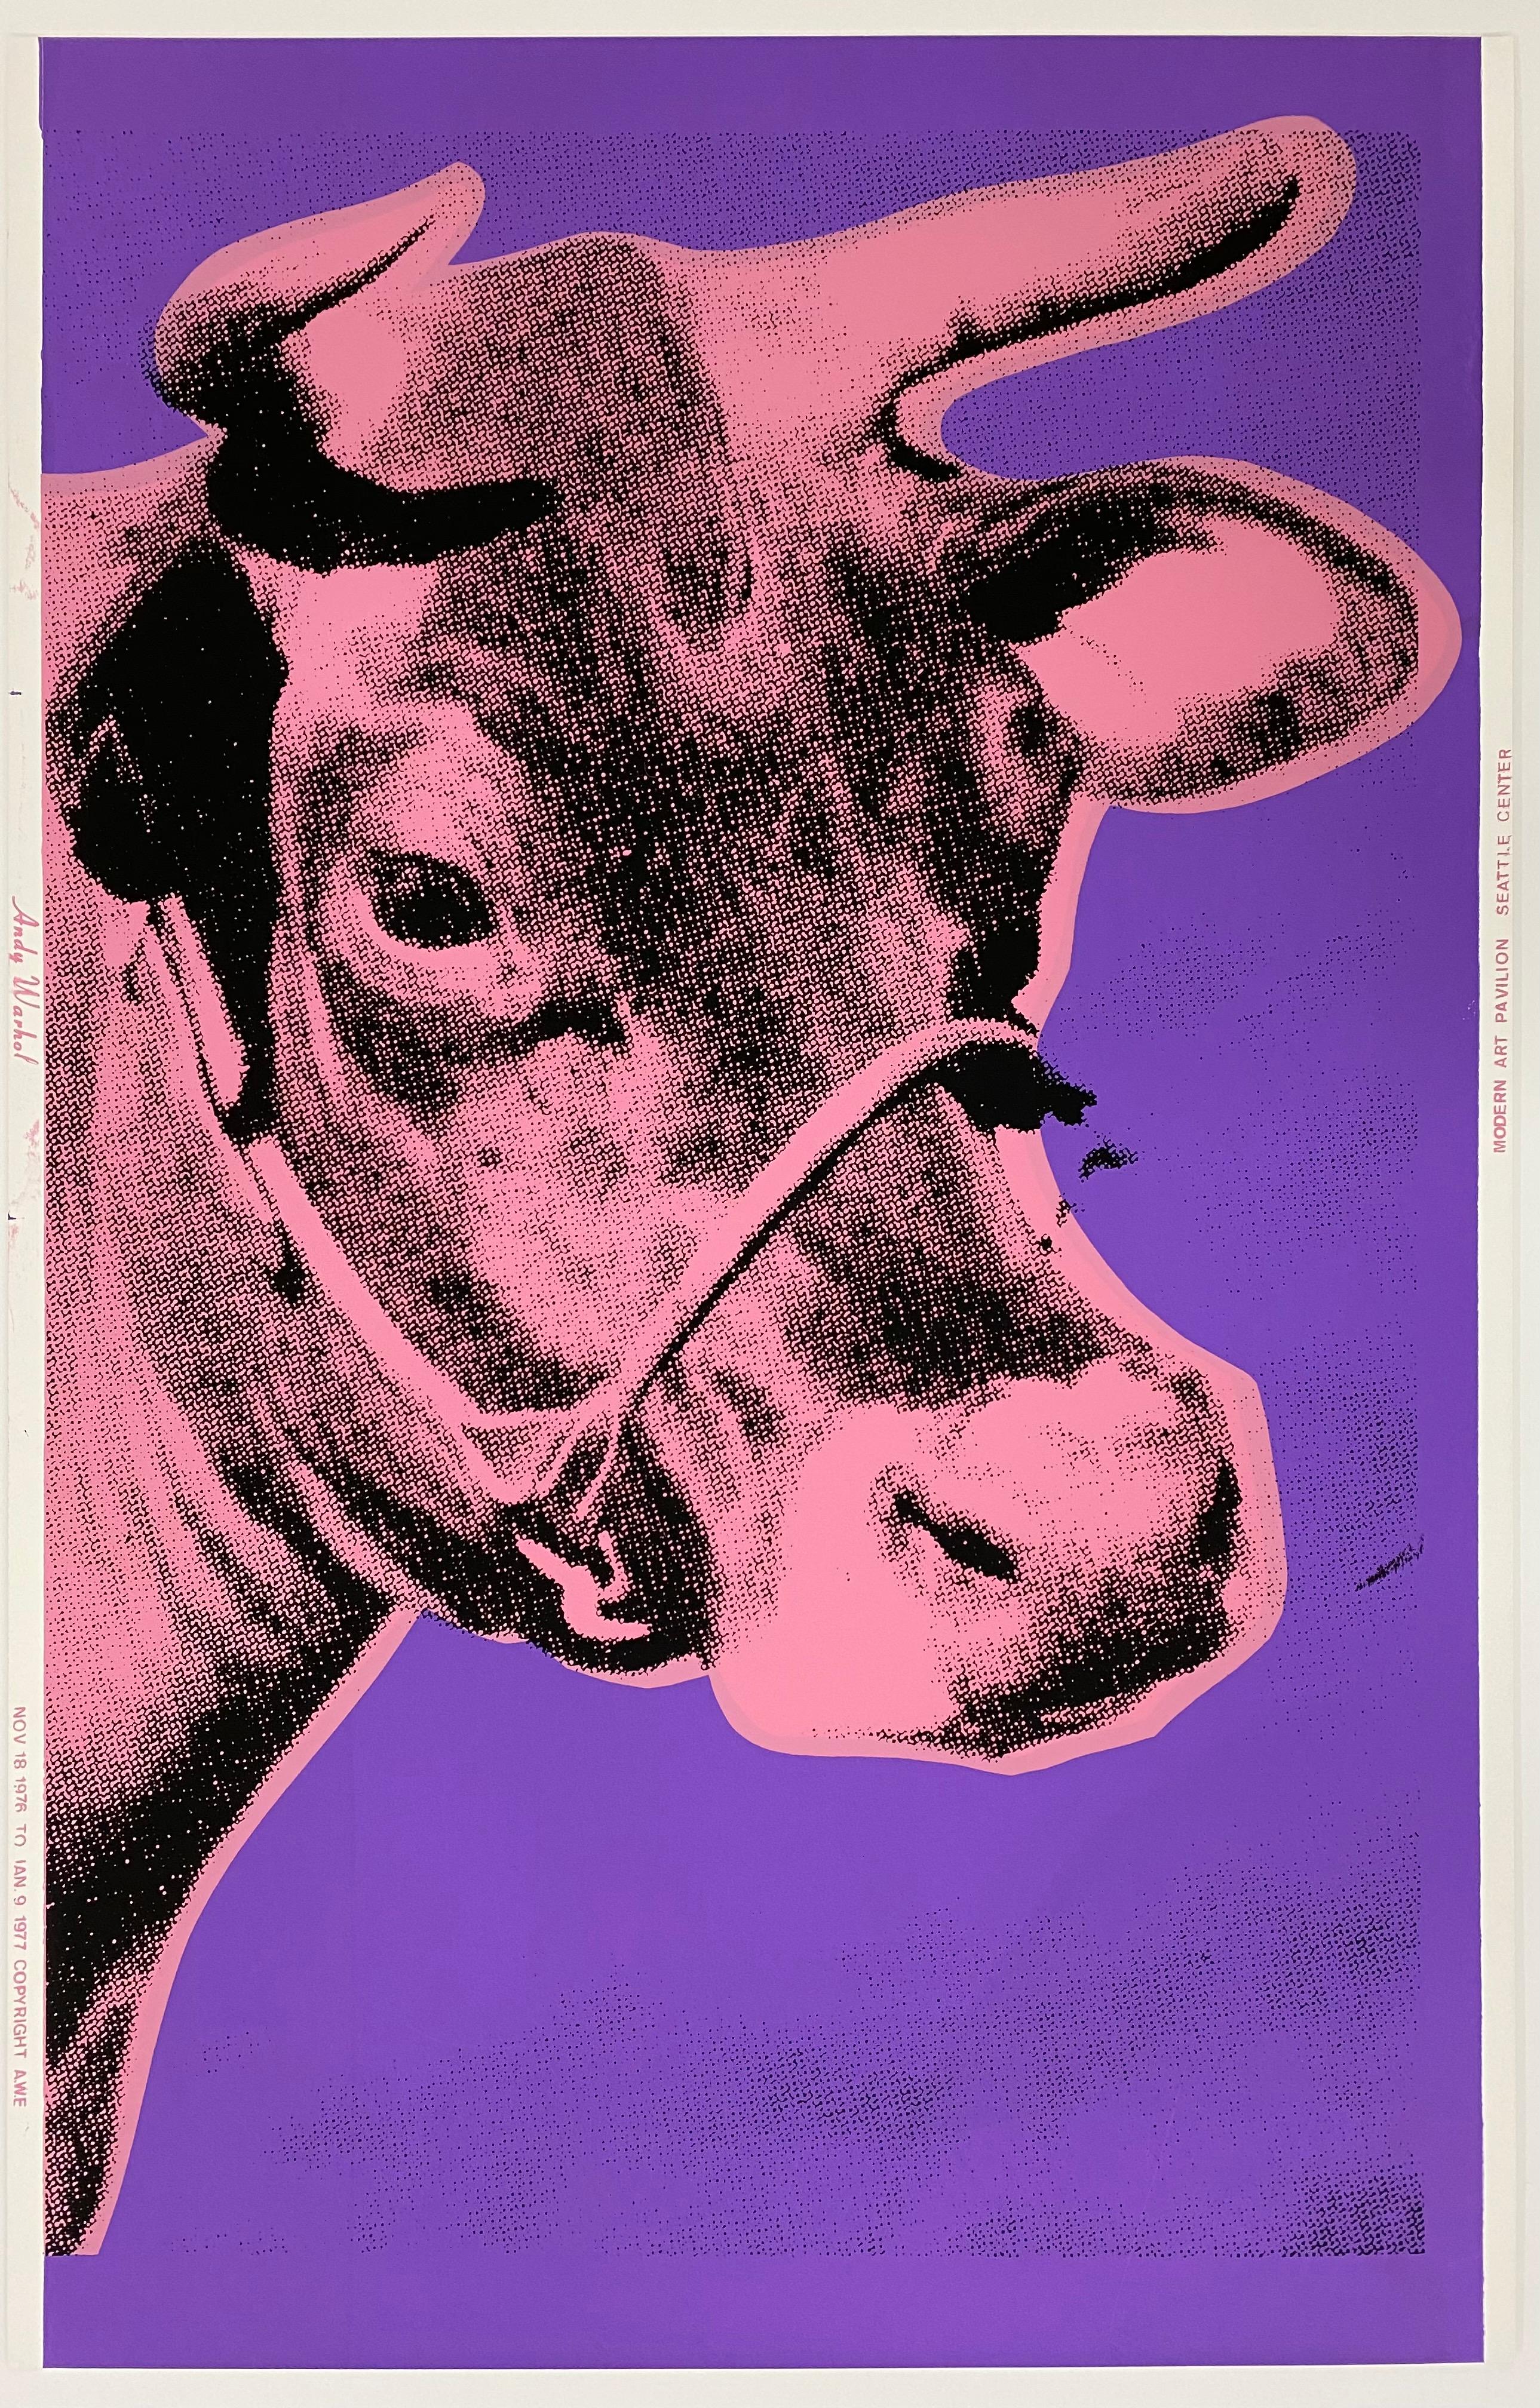 Andy Warhol Animal Print - Cow, 1976